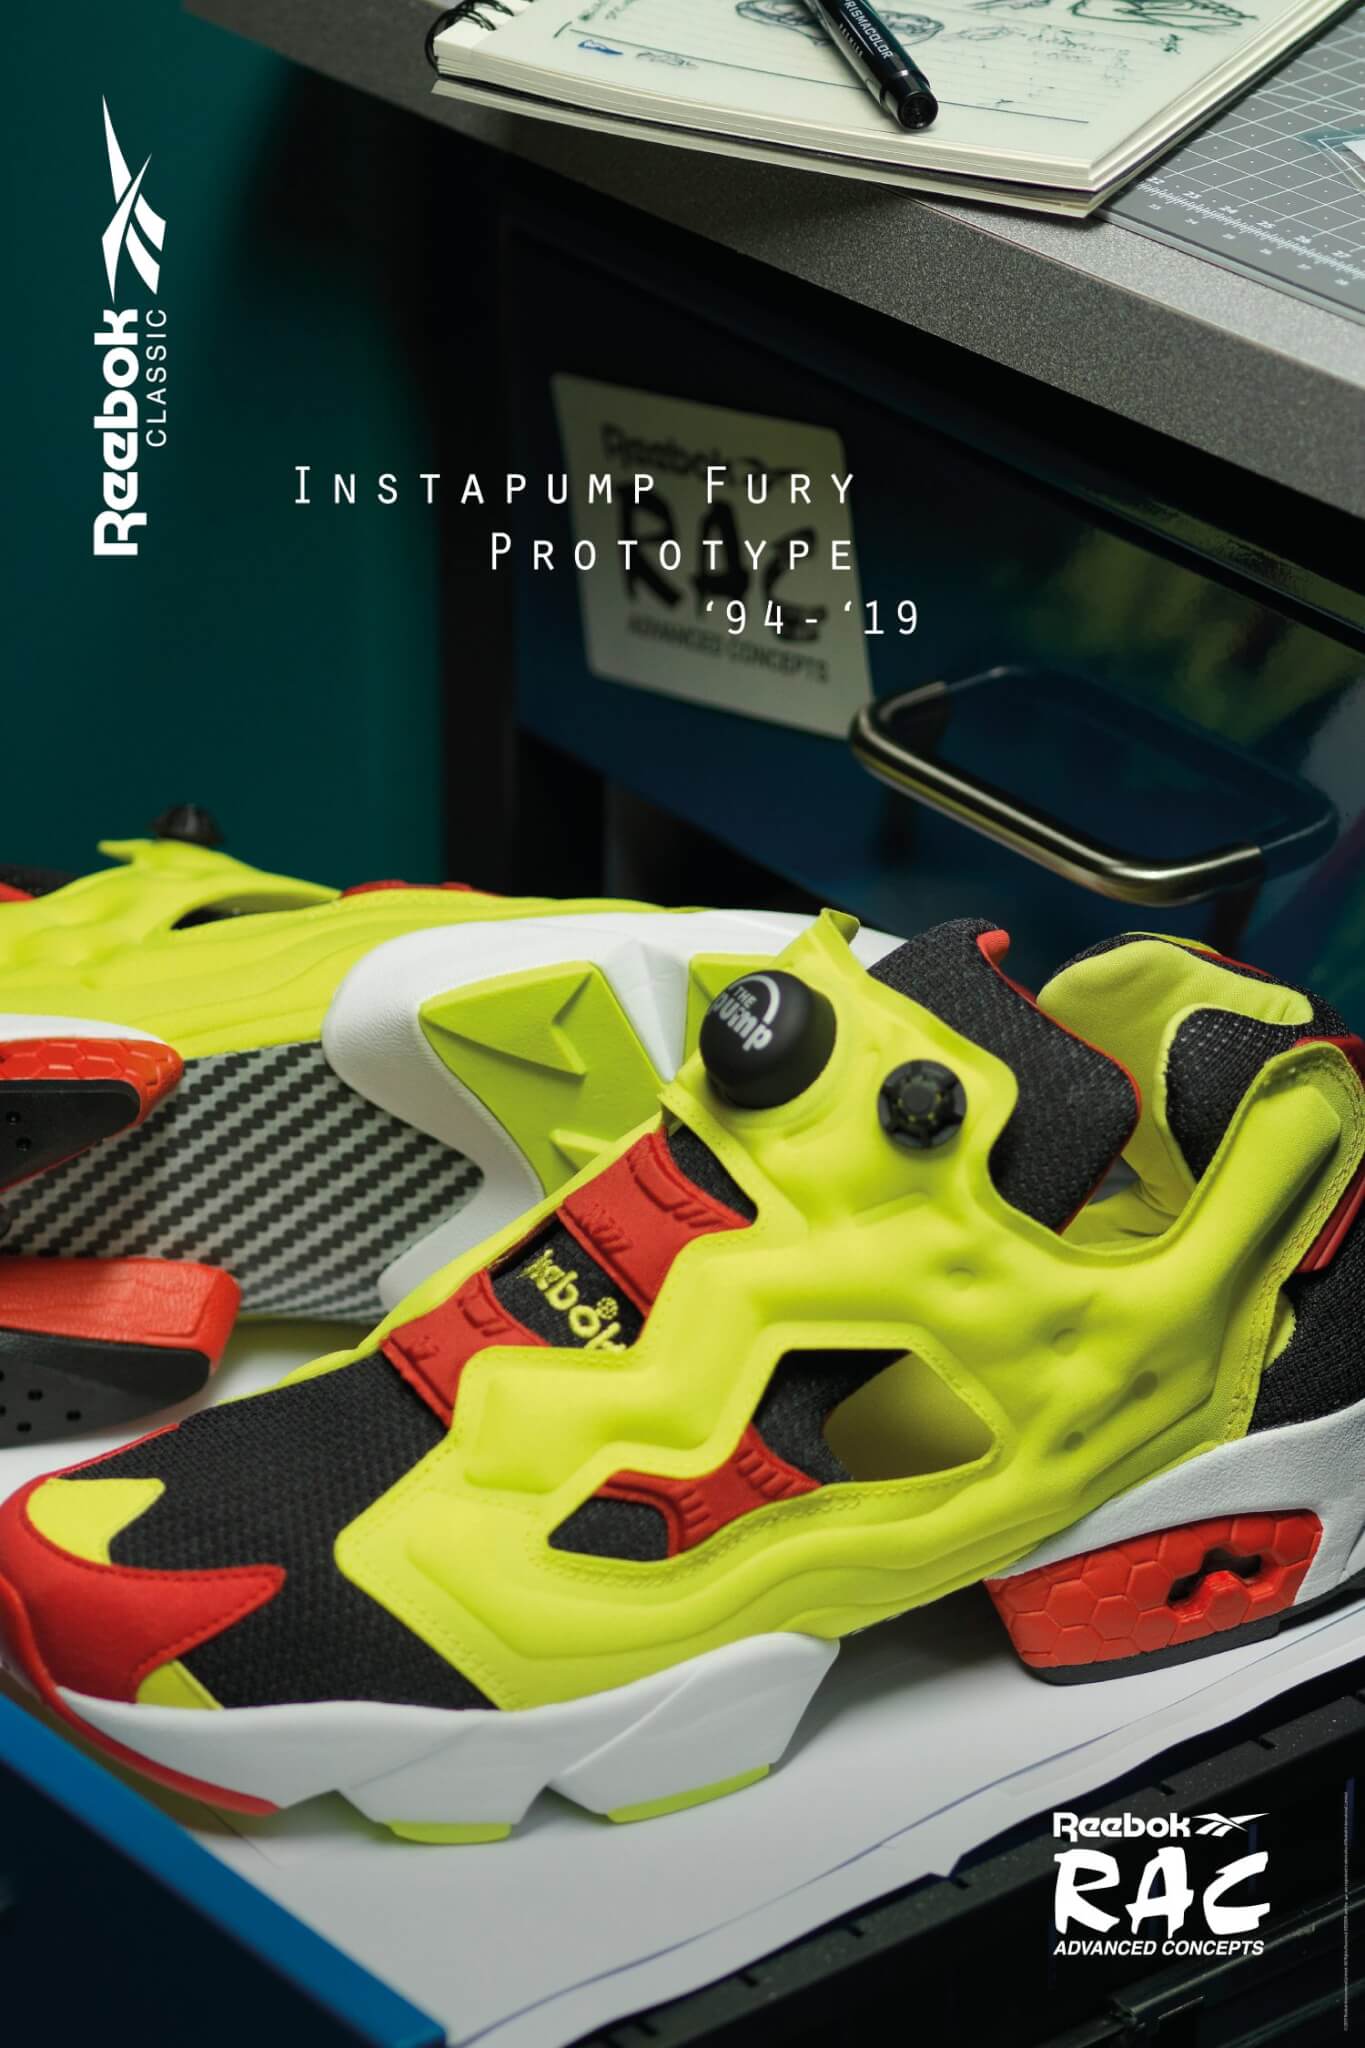 リーボックが幻のポンプフューリーを復刻 ファン垂涎の Instapump Fury Proto 94 は1994足限定で発売 メンズファッションメディア Iicfiicf 男前研究所